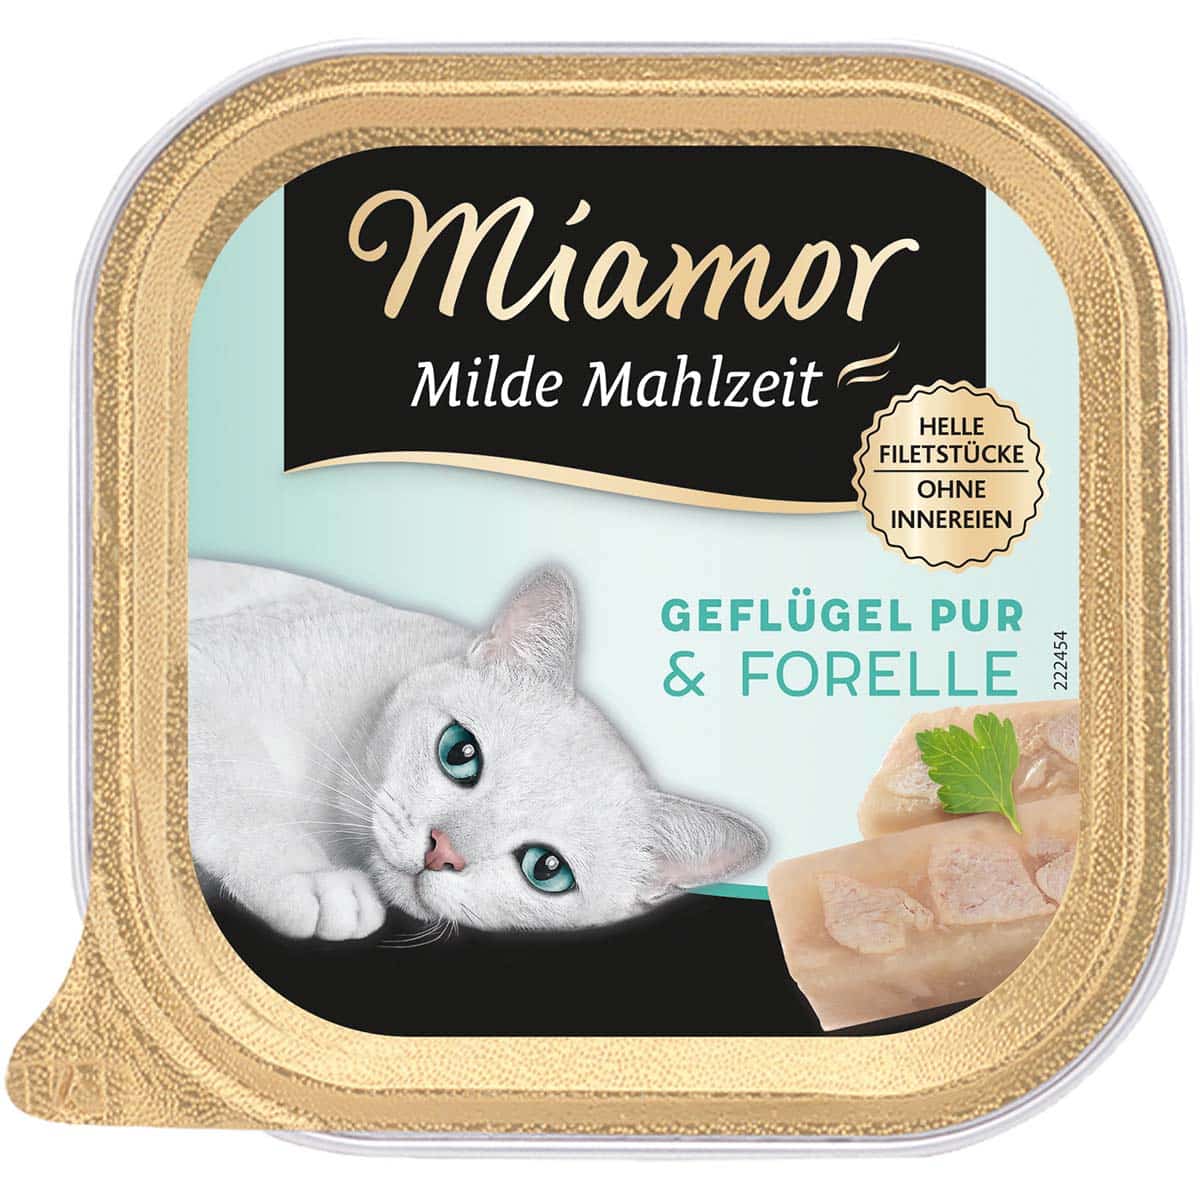 Miamor Milde Mahlzeit Geflügel Pur & Forelle 32x100g